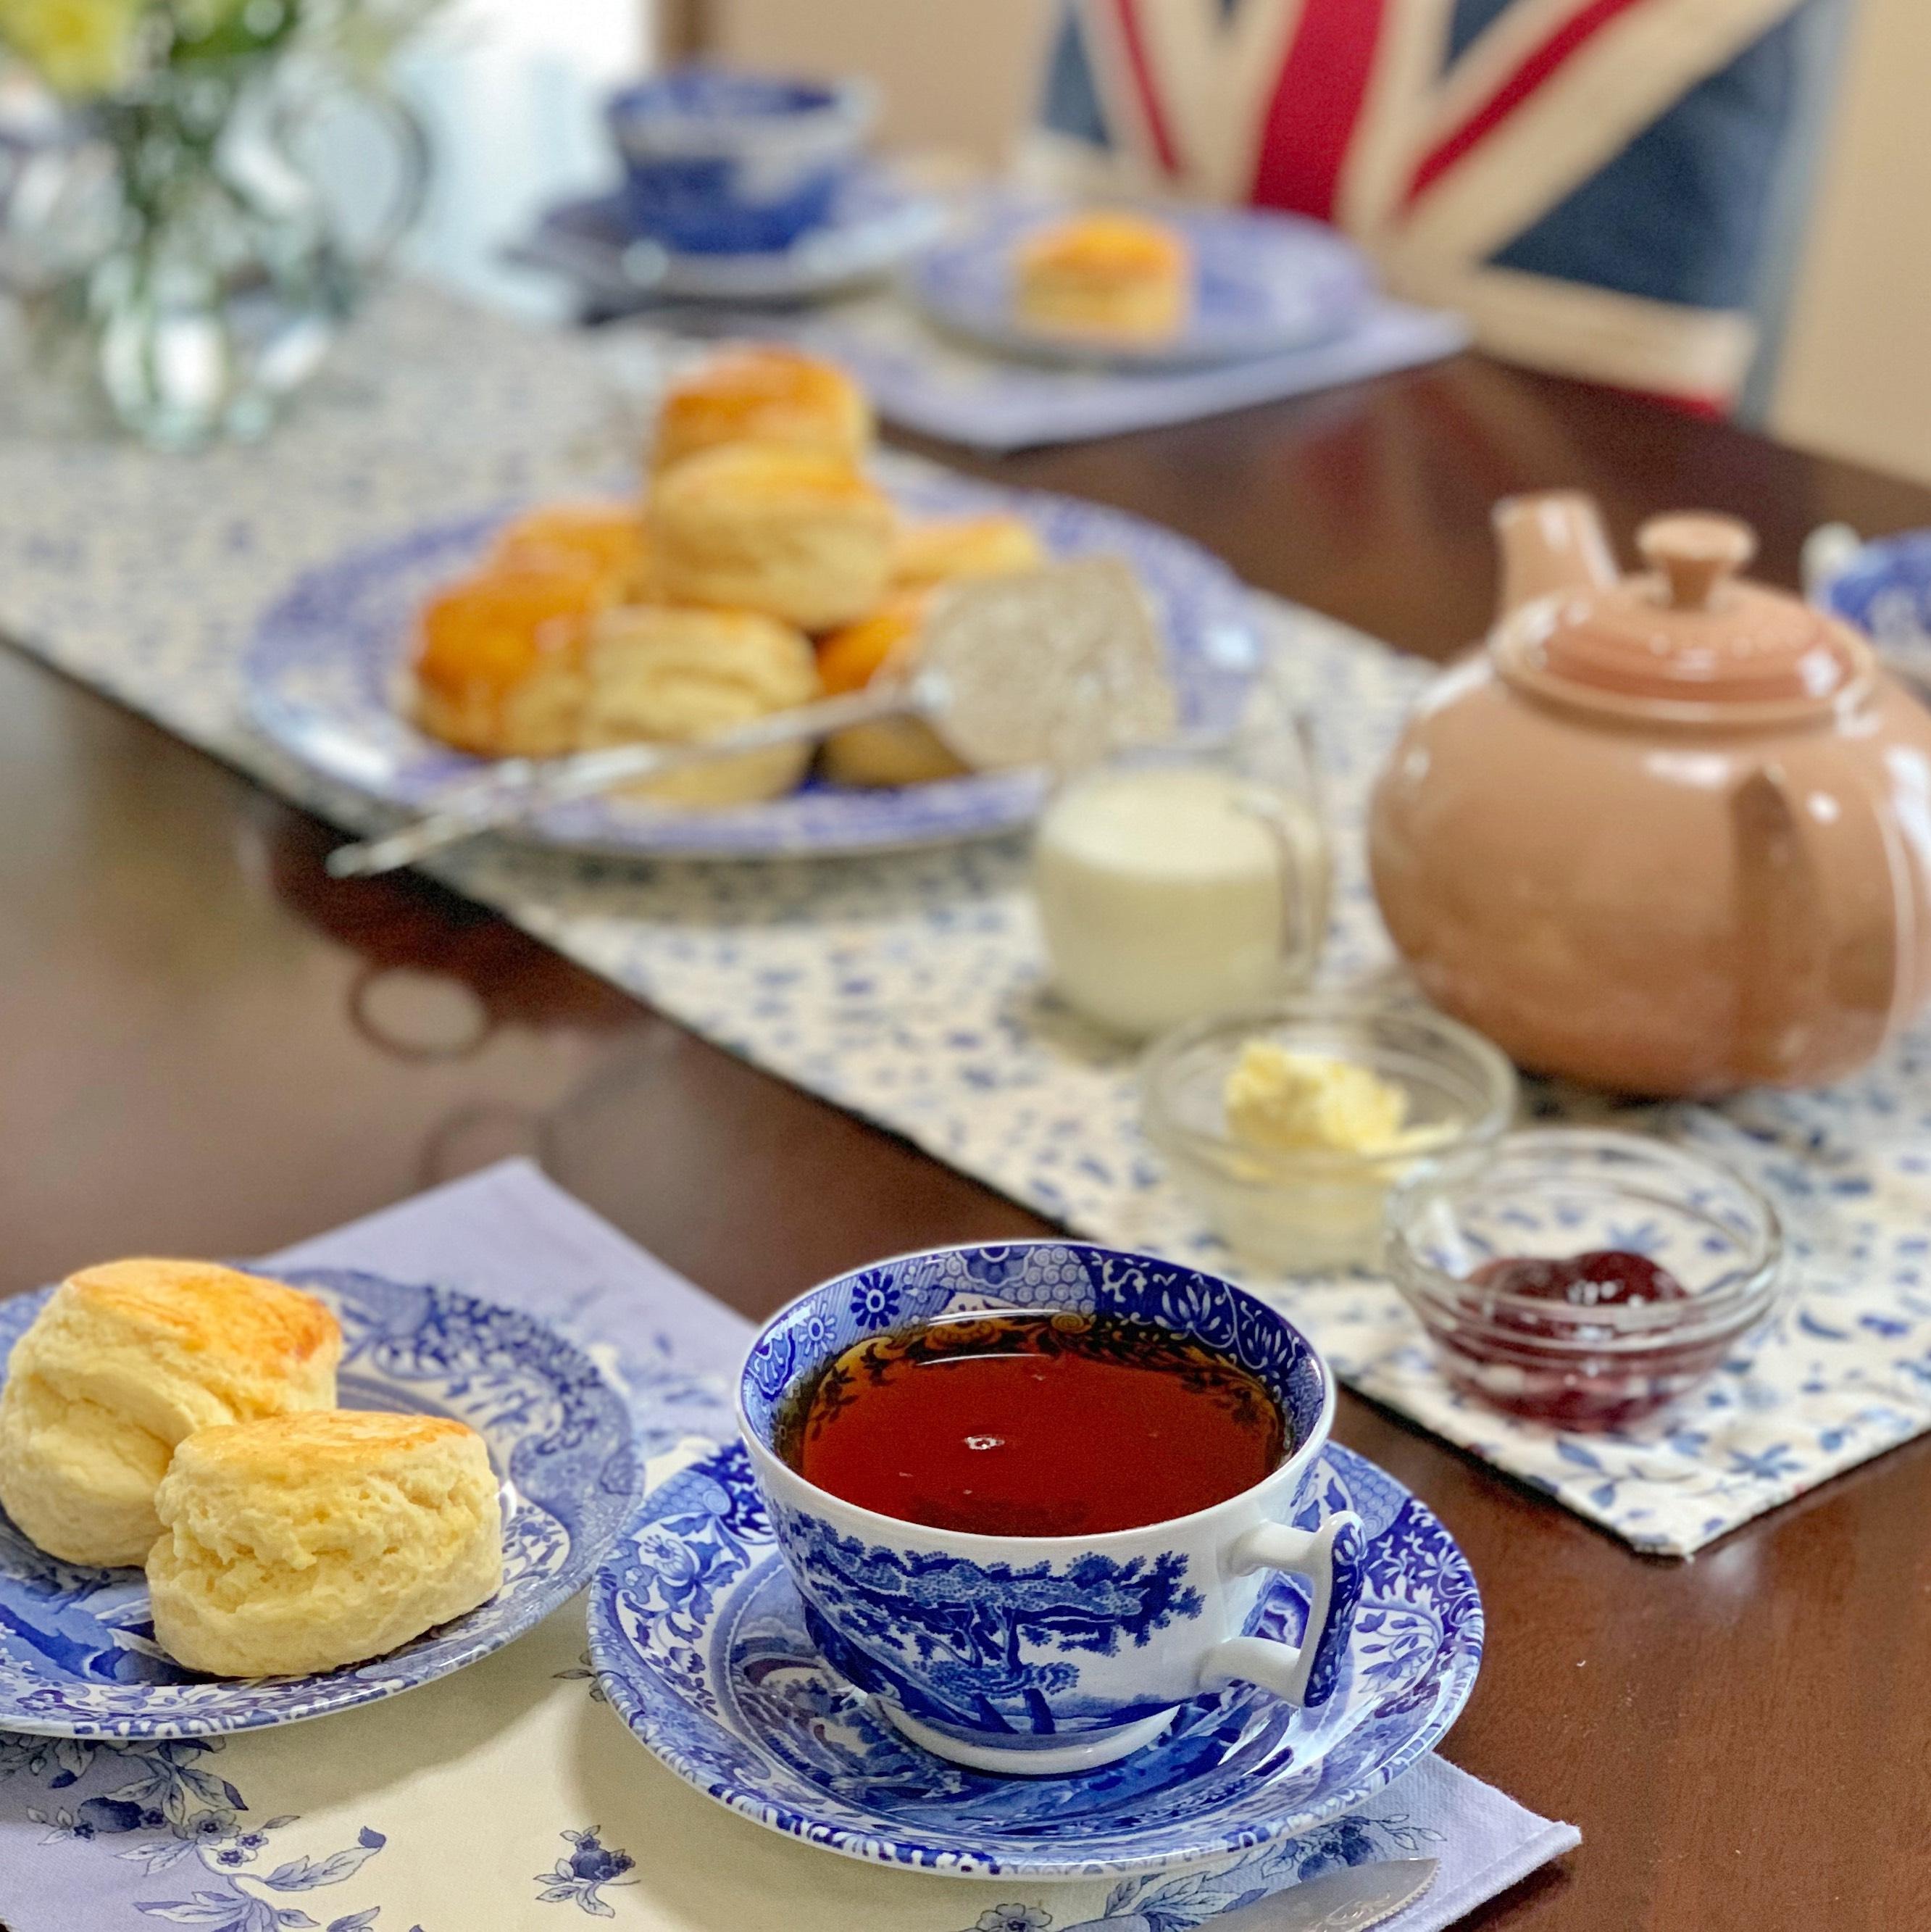 プラムブロッサム紅茶教室・イギリスの家庭のお菓子教室のブログ 料理教室検索サイト「クスパ」